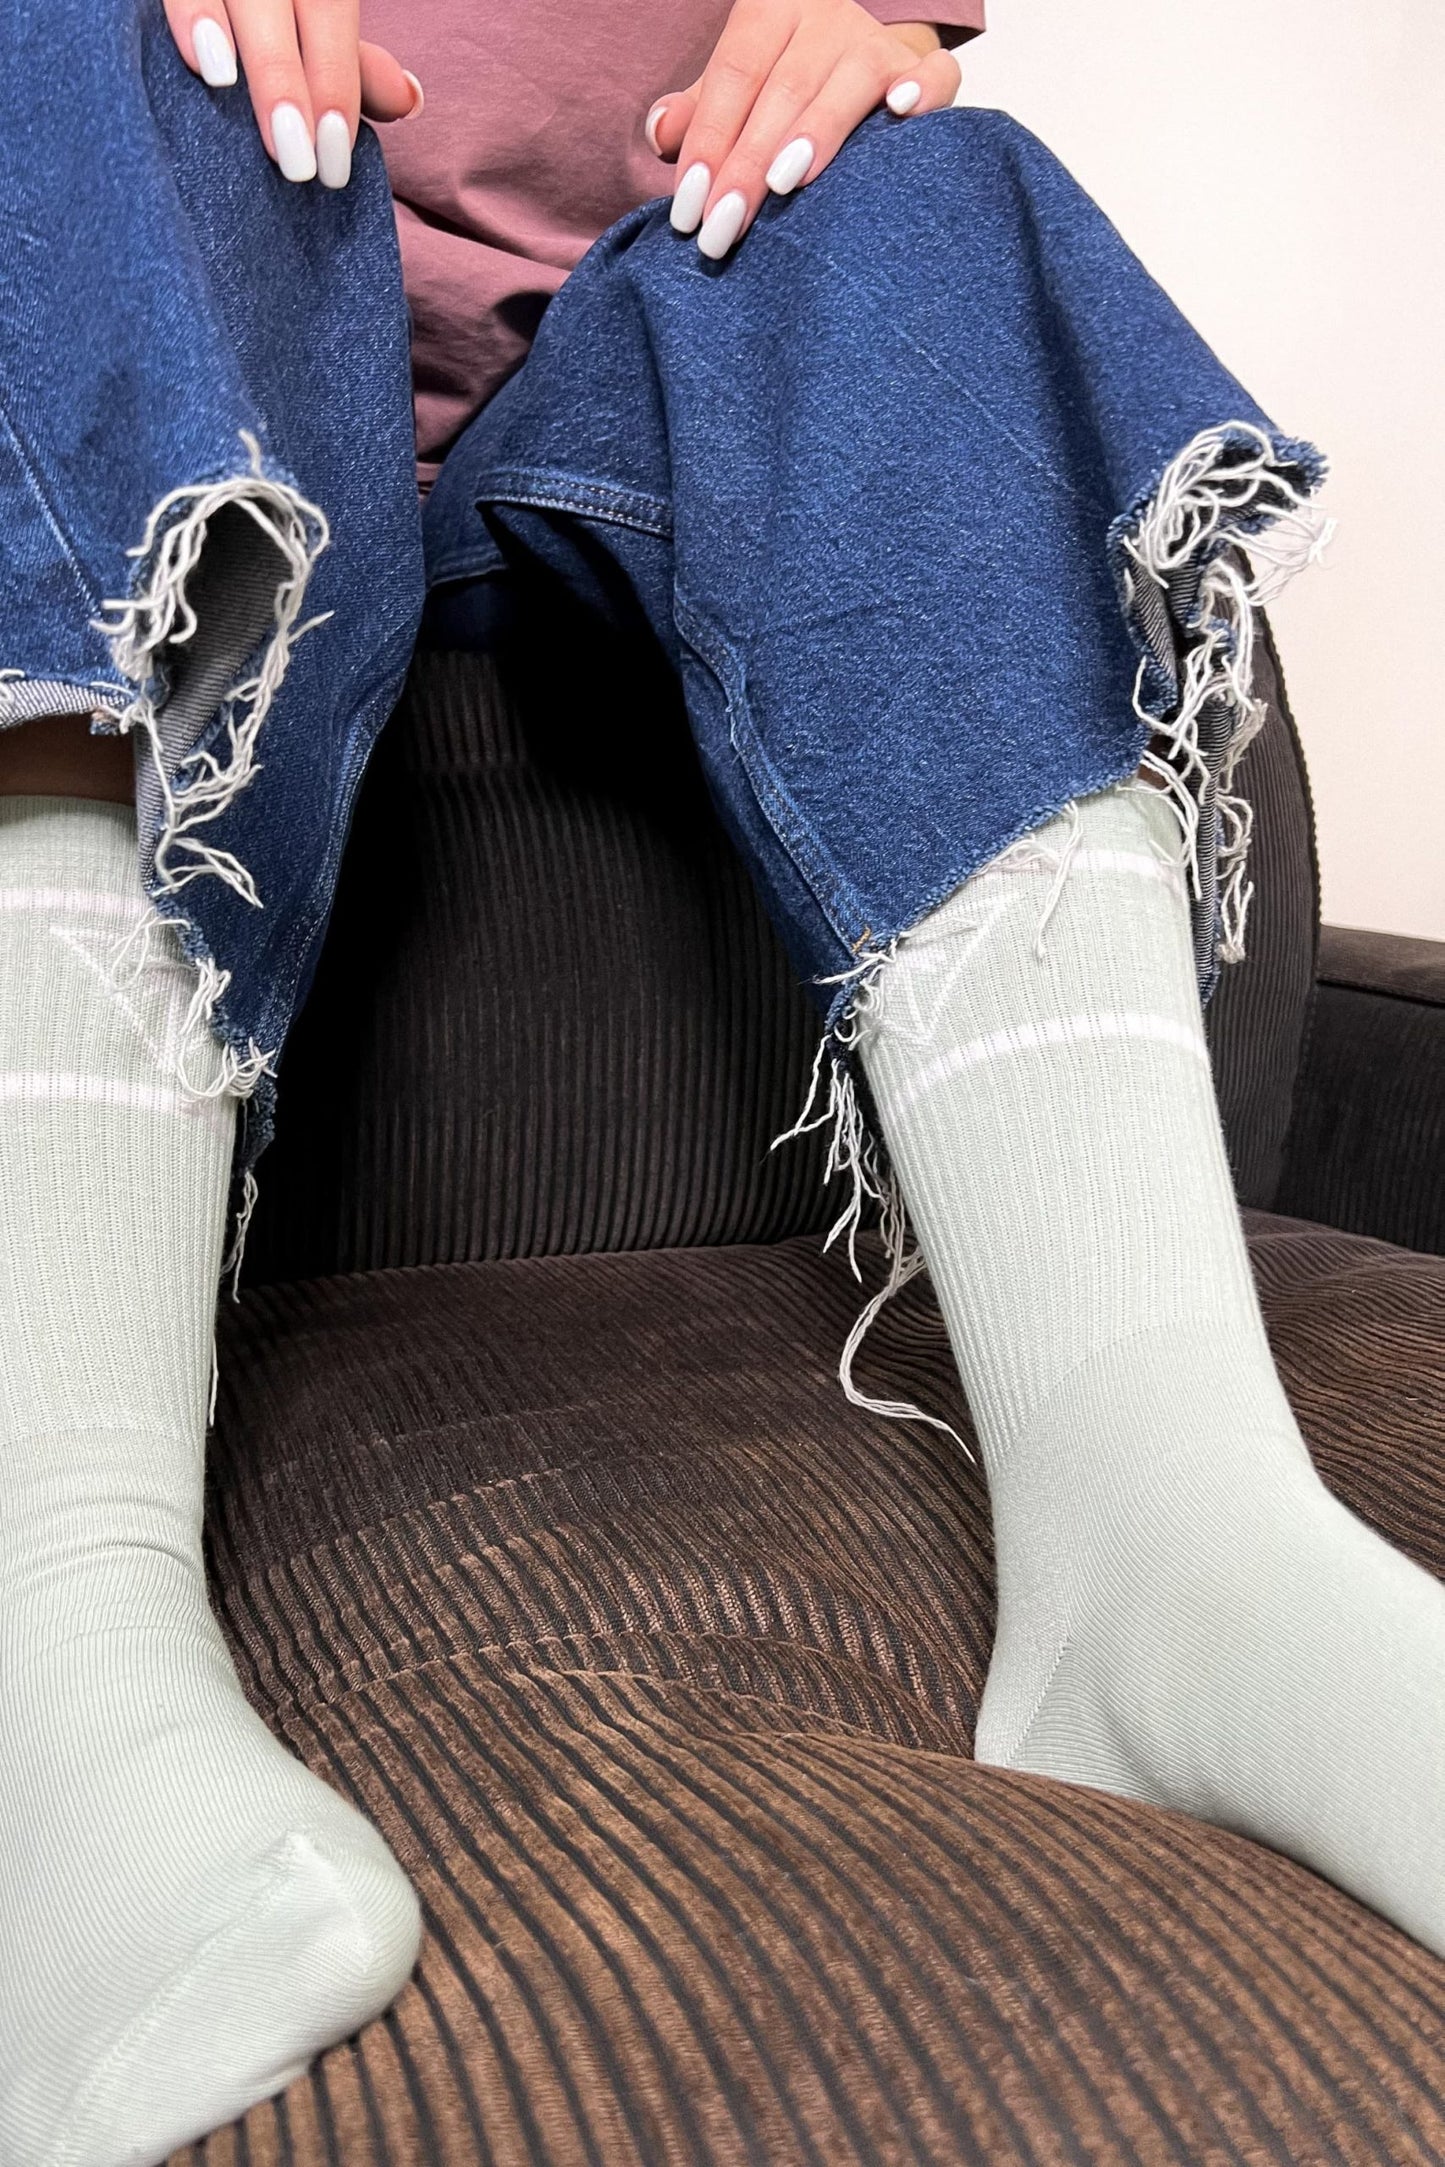 senlima-strio-socks